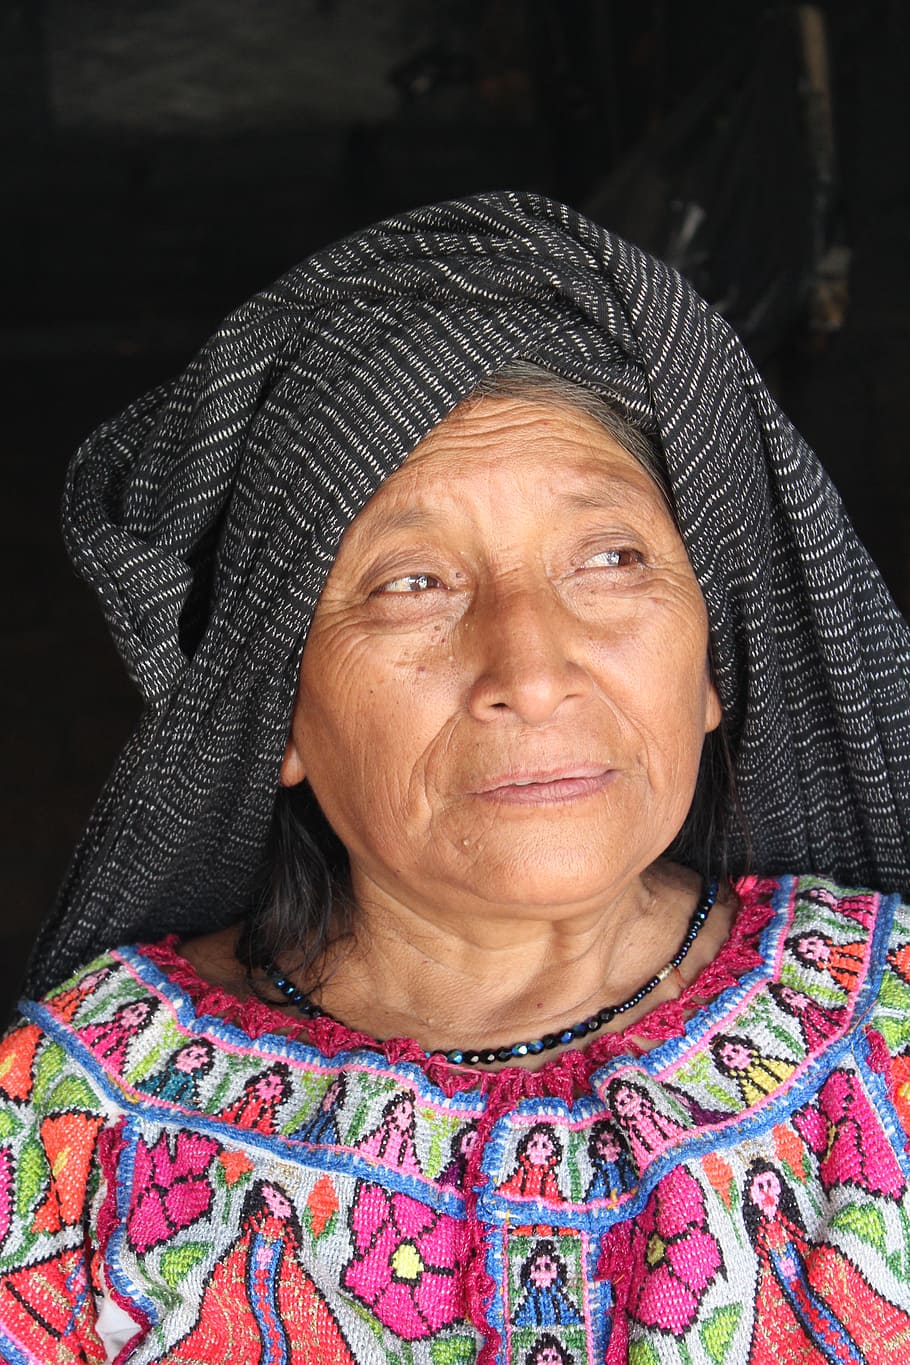 女性, 黒, スカーフ, 頭, インド, メキシコ, オアハカ, 貧困, 伝統的な服, ショール